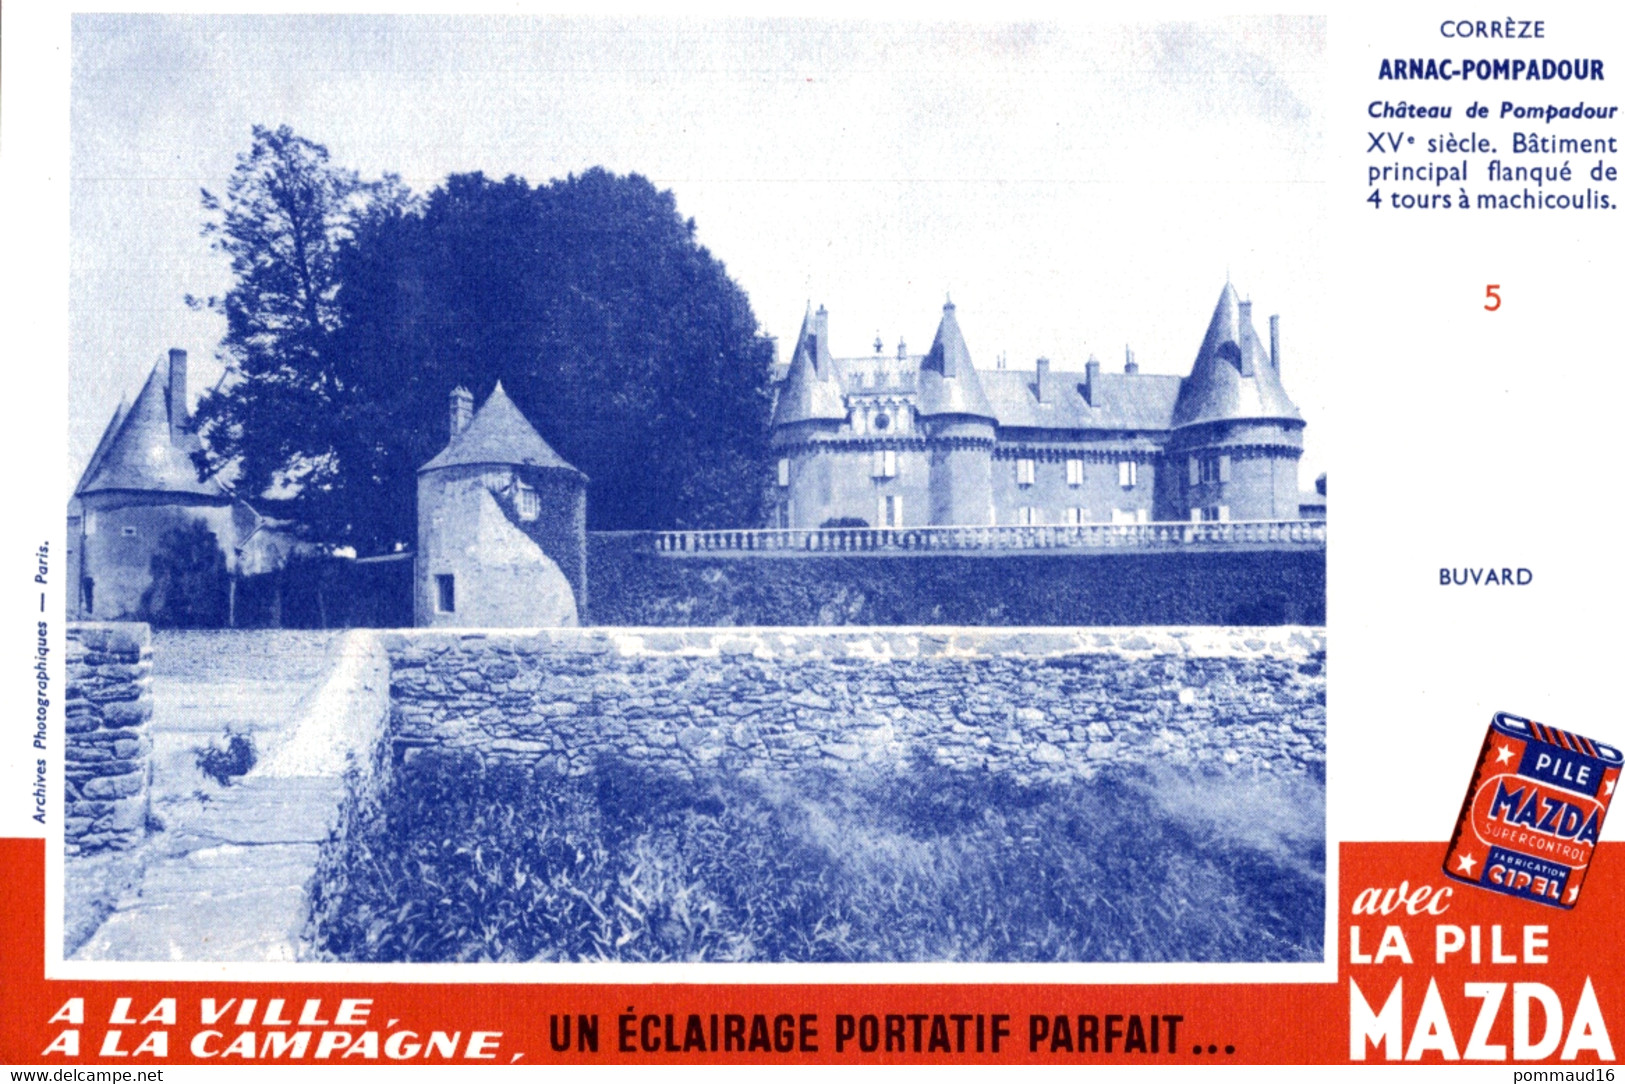 Buvard Mazda Arnac-Pompadour Château De Pompadour - Piles